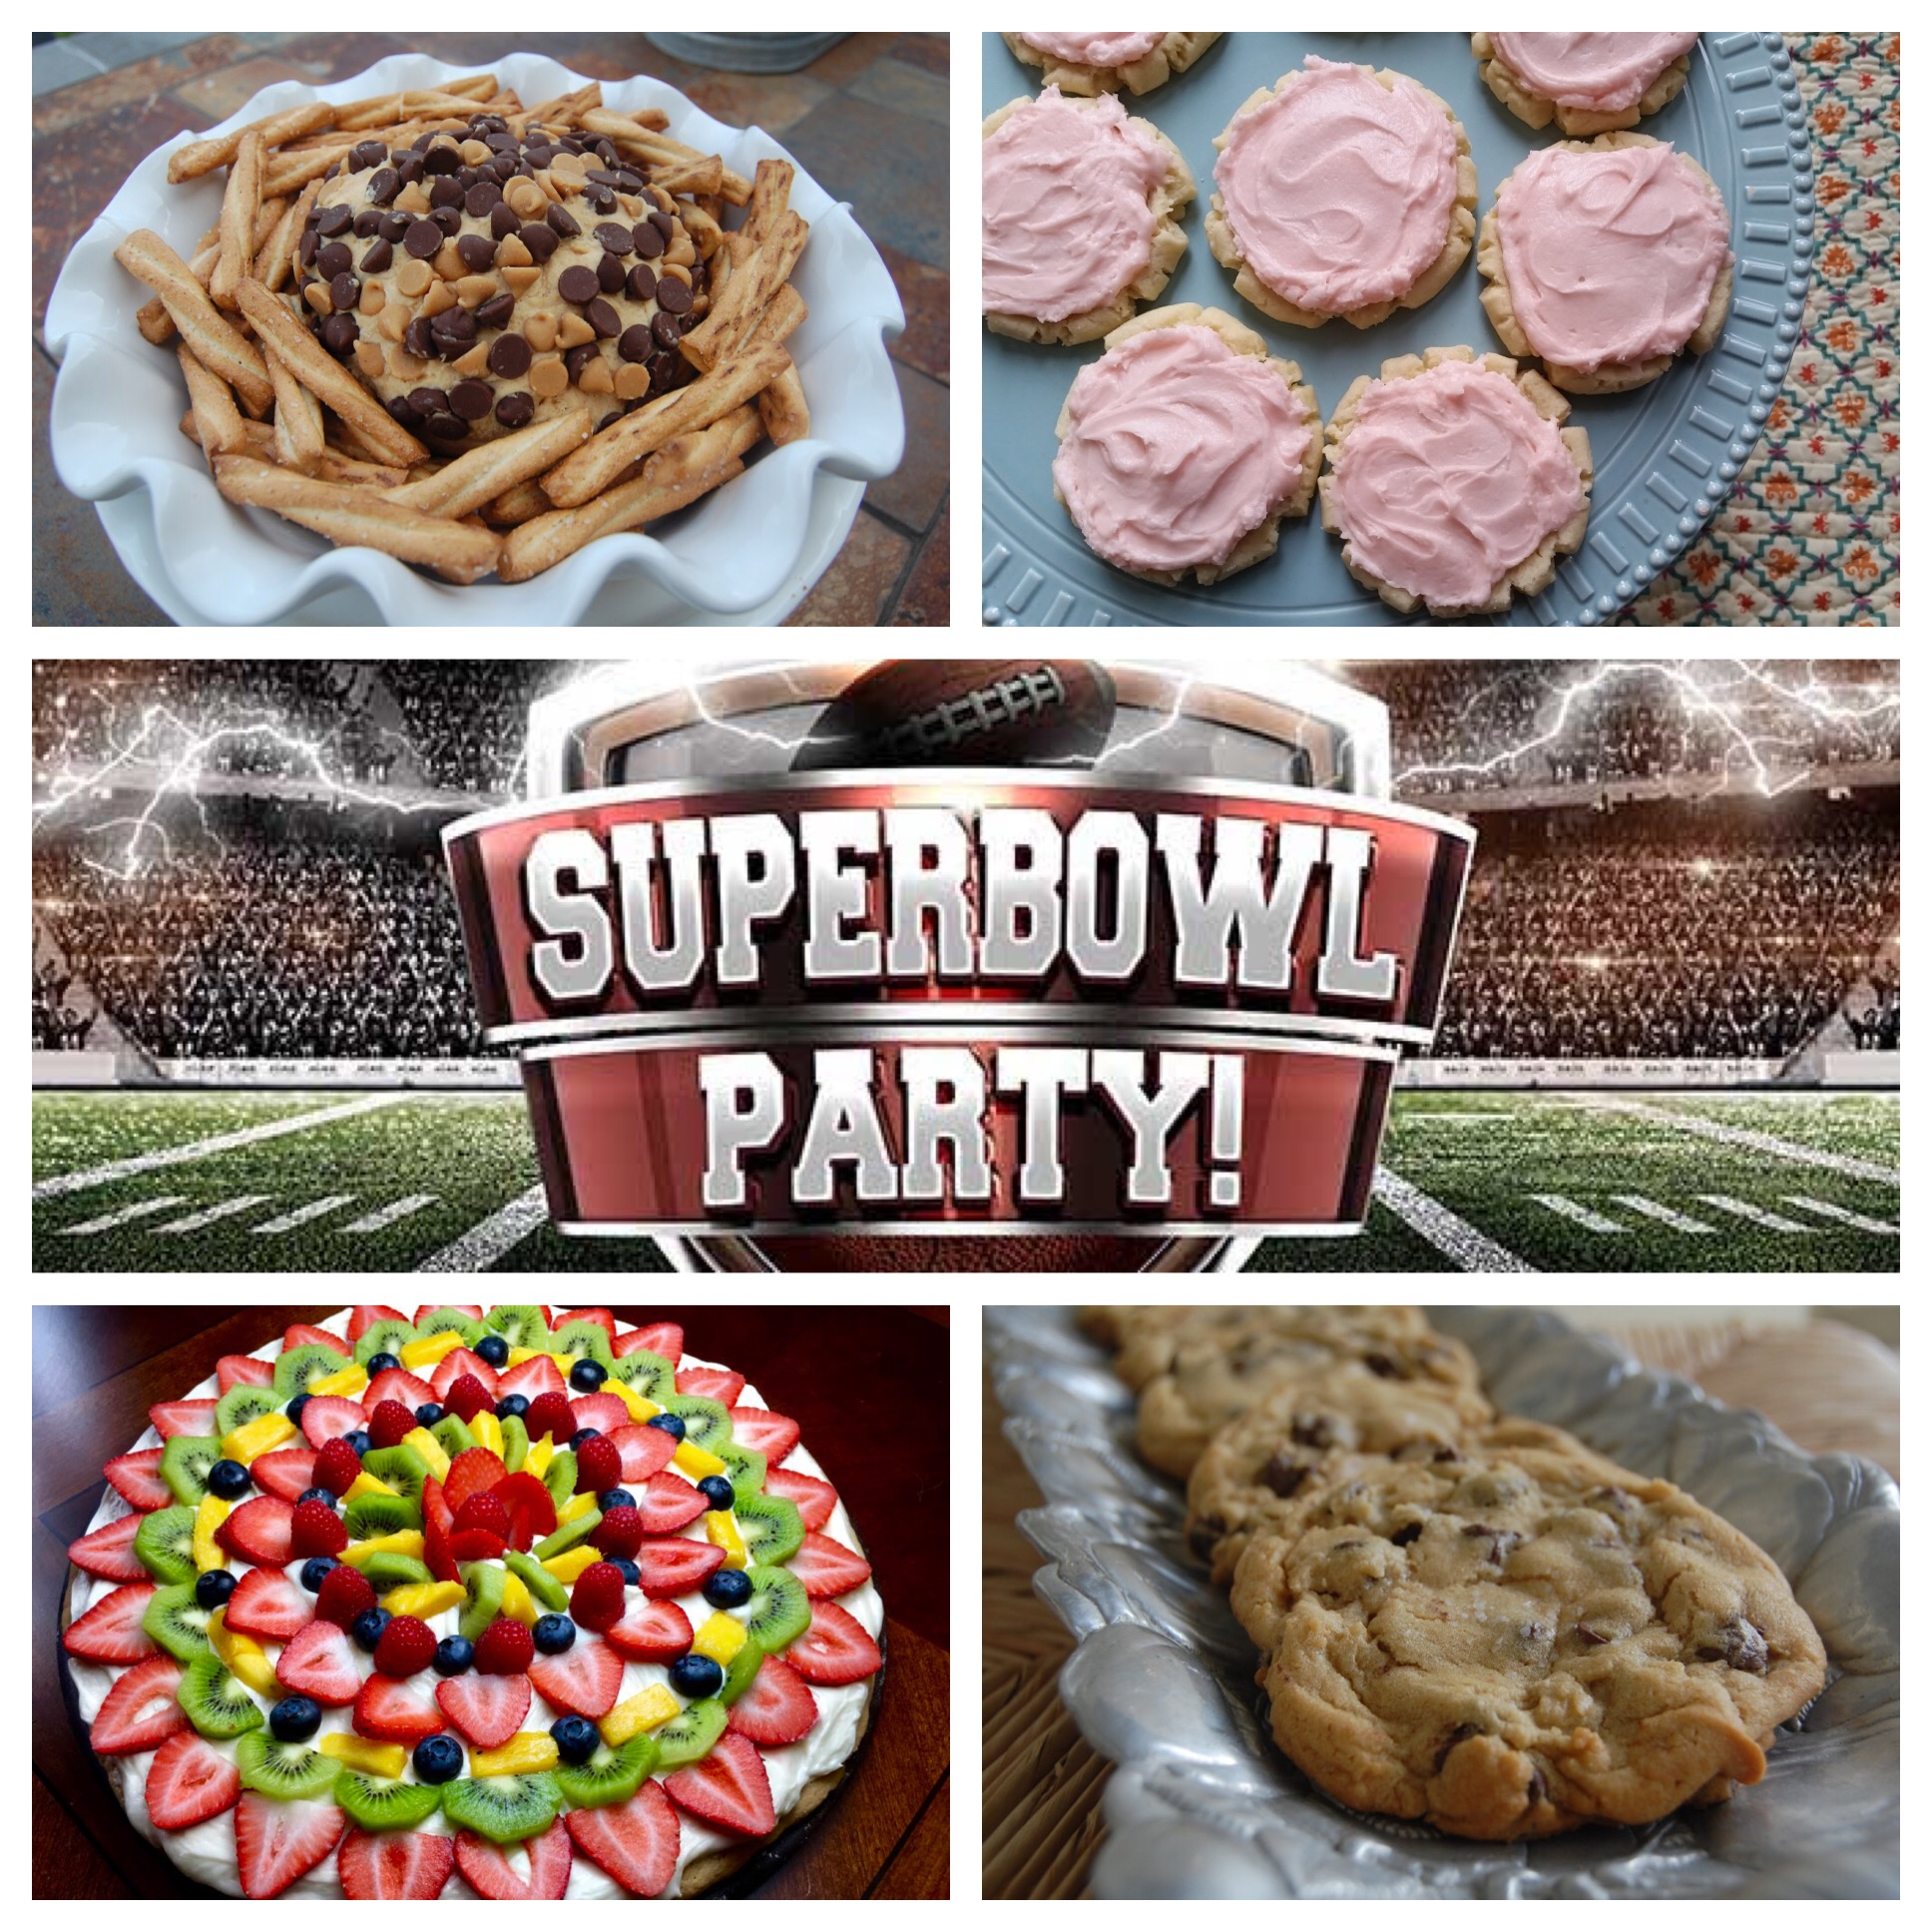 Super Bowl Party treats